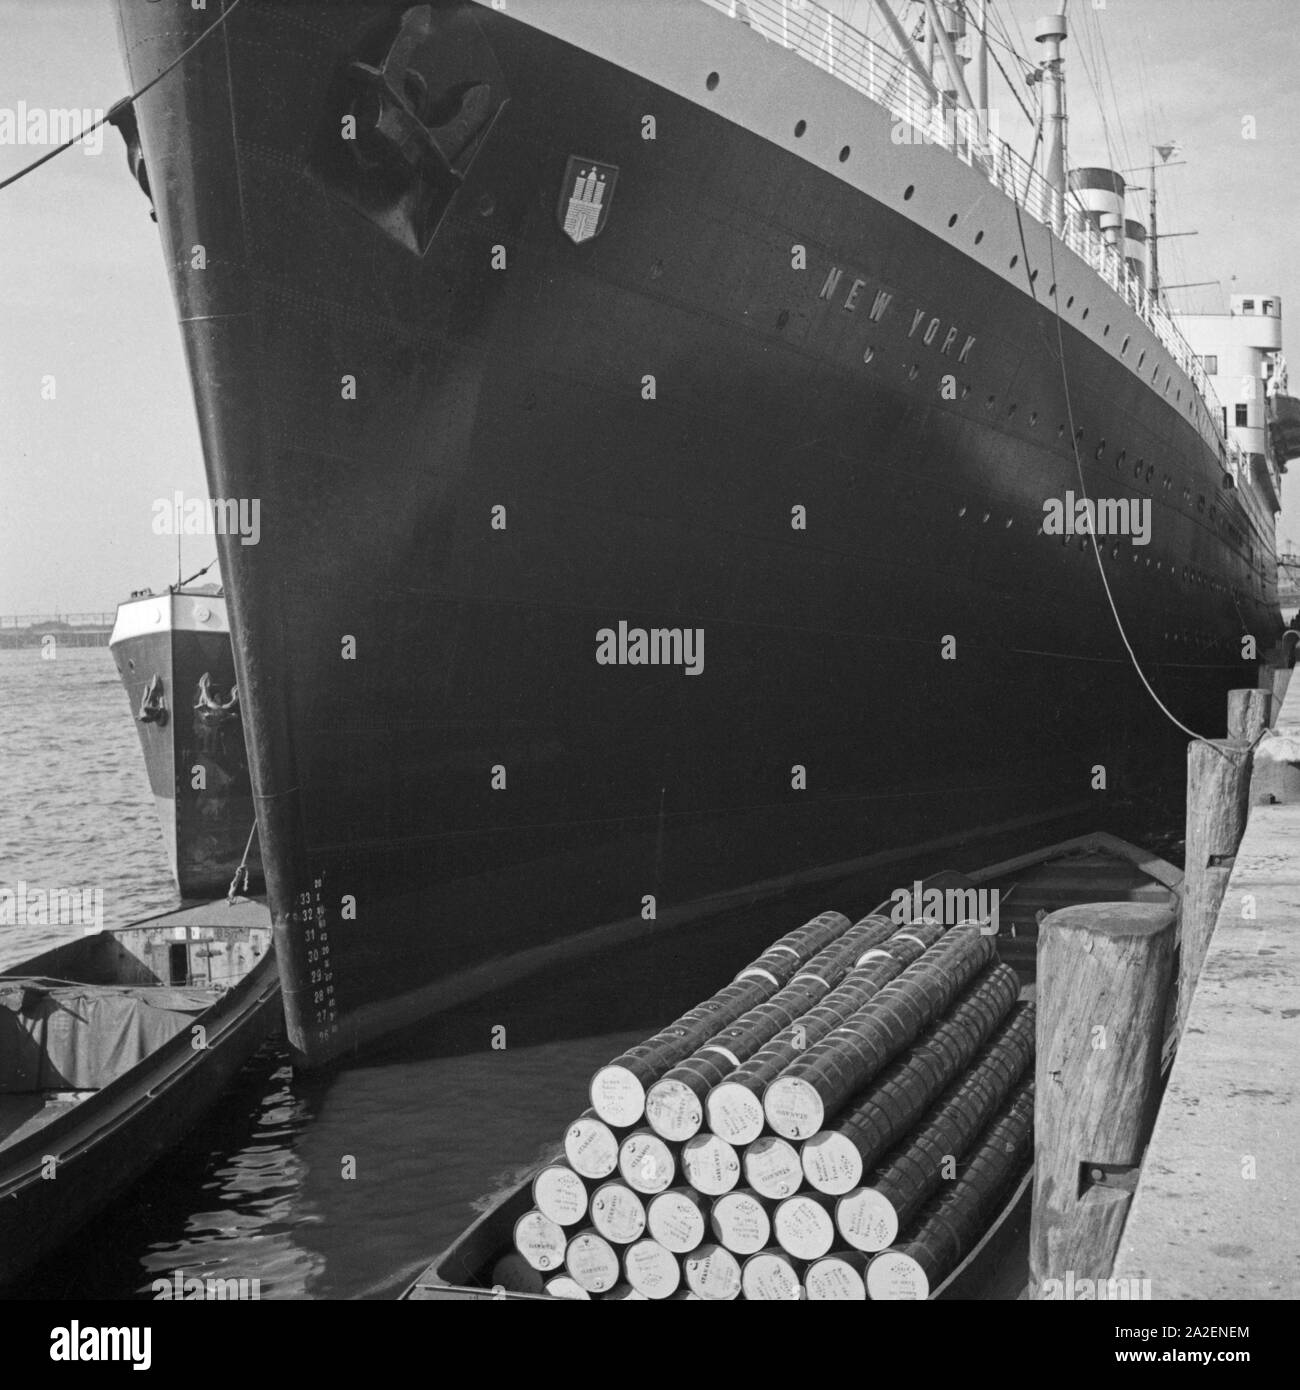 Das Schiff 'Nueva York' der HAPAG im Hafen von Hamburg, Alemania 1930er Jahre. Barco de vapor "Nueva York" de Hapag compañía en puerto de Hamburgo, Alemania 1930. Foto de stock